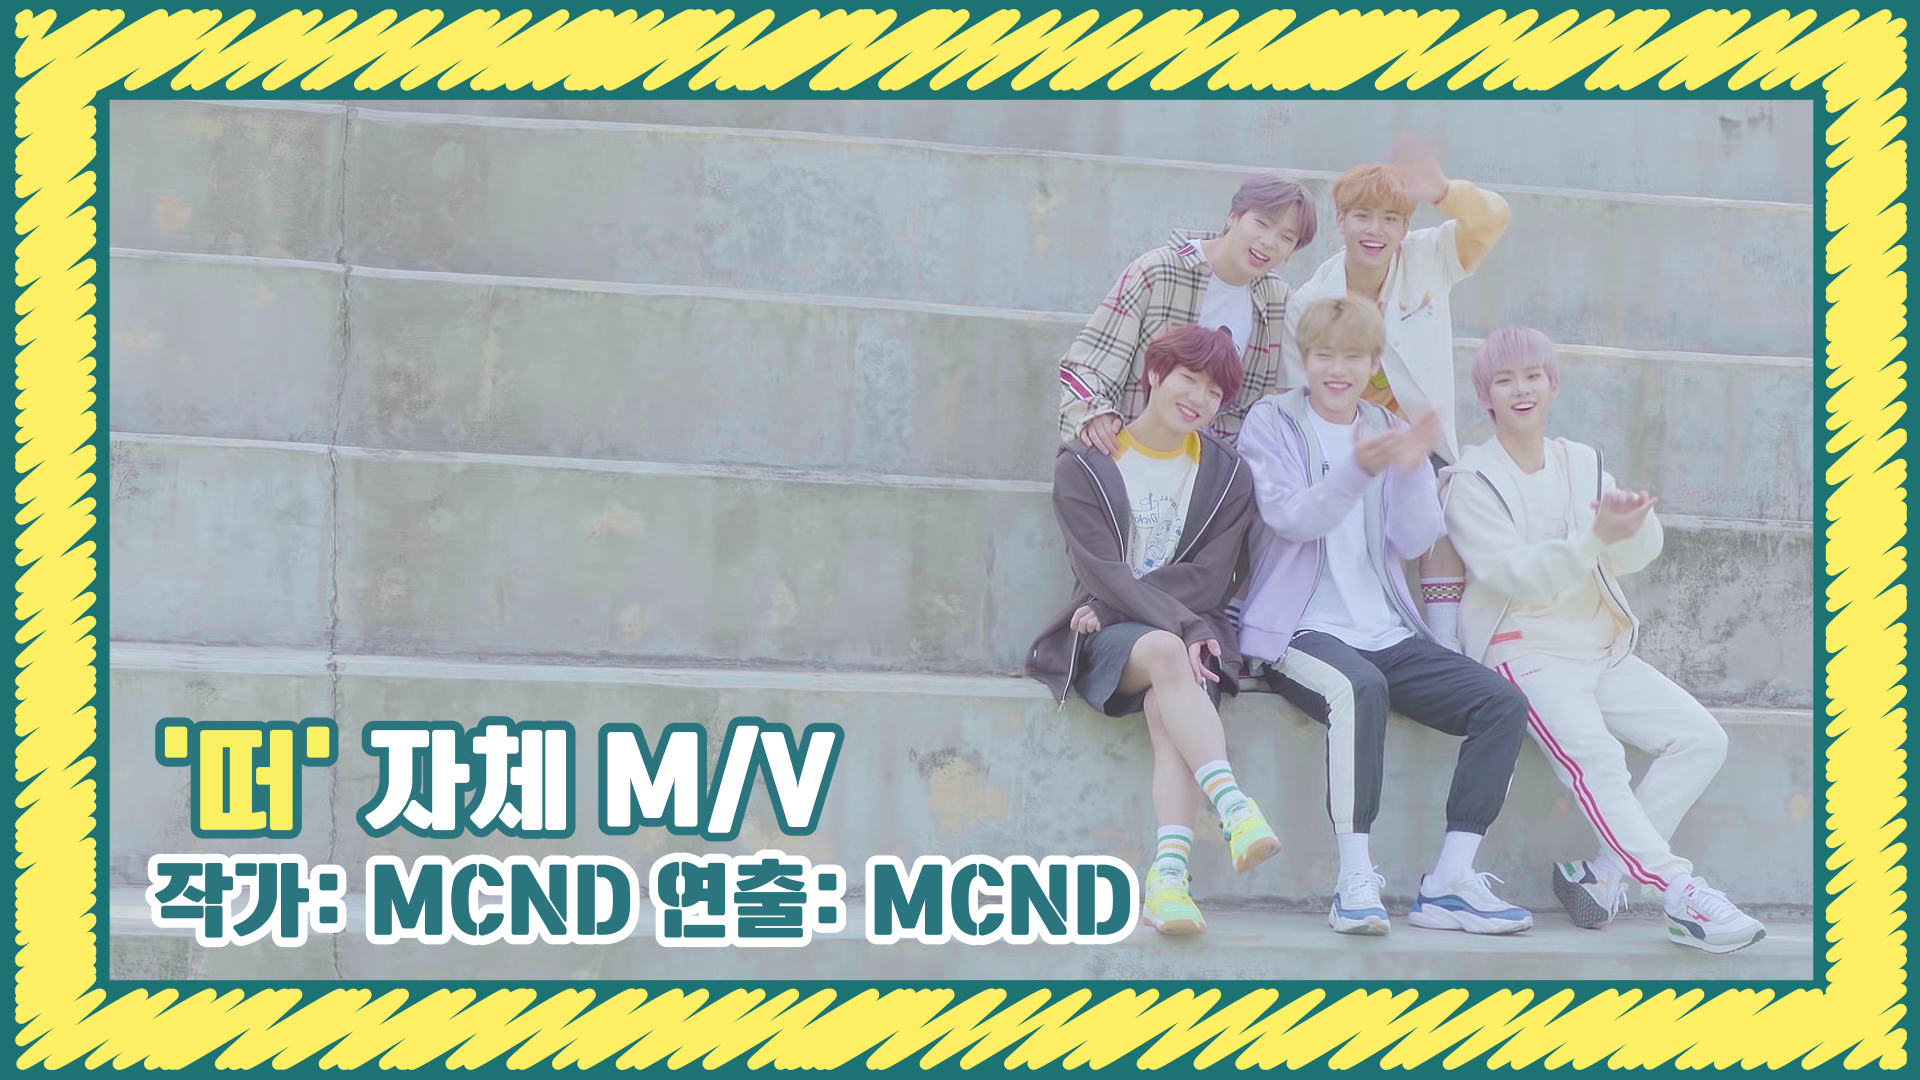 [Let's Play MCND] MCND '떠(Spring)' 자체 M/V (작가: MCND / 연출: MCND)